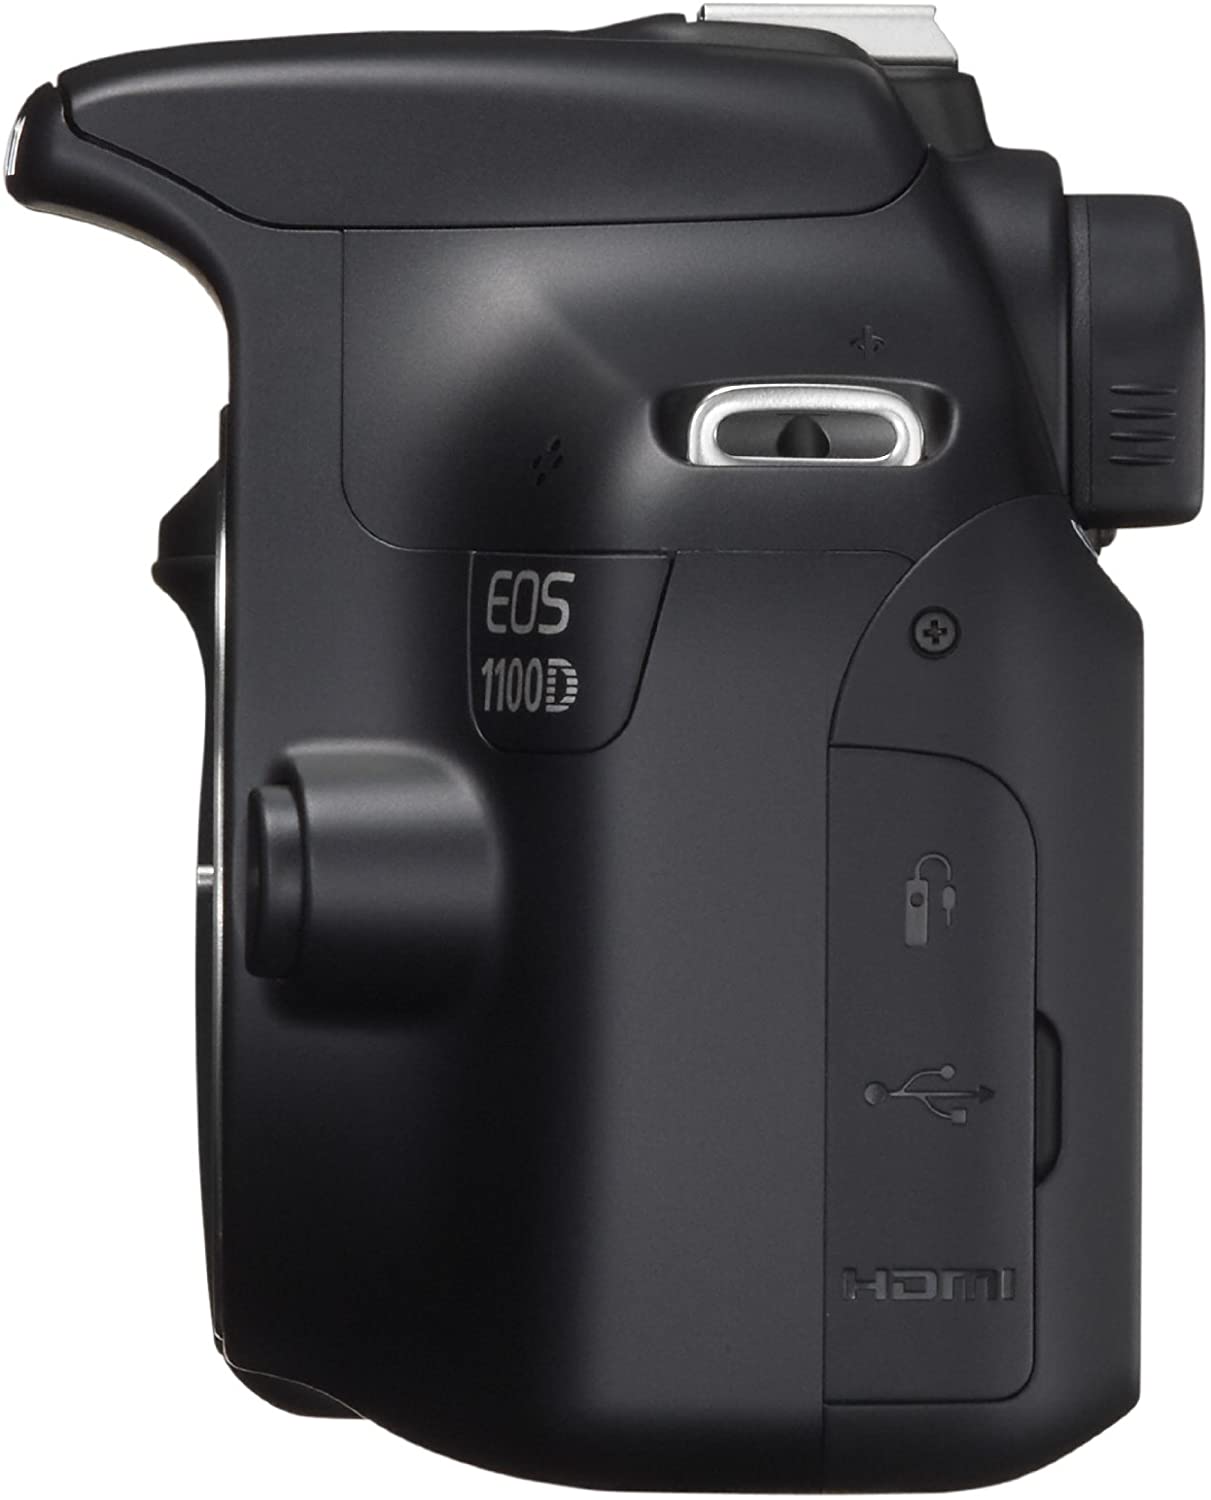  Canon  EOS  1100D  Prix Test Avis Caract ristiques  